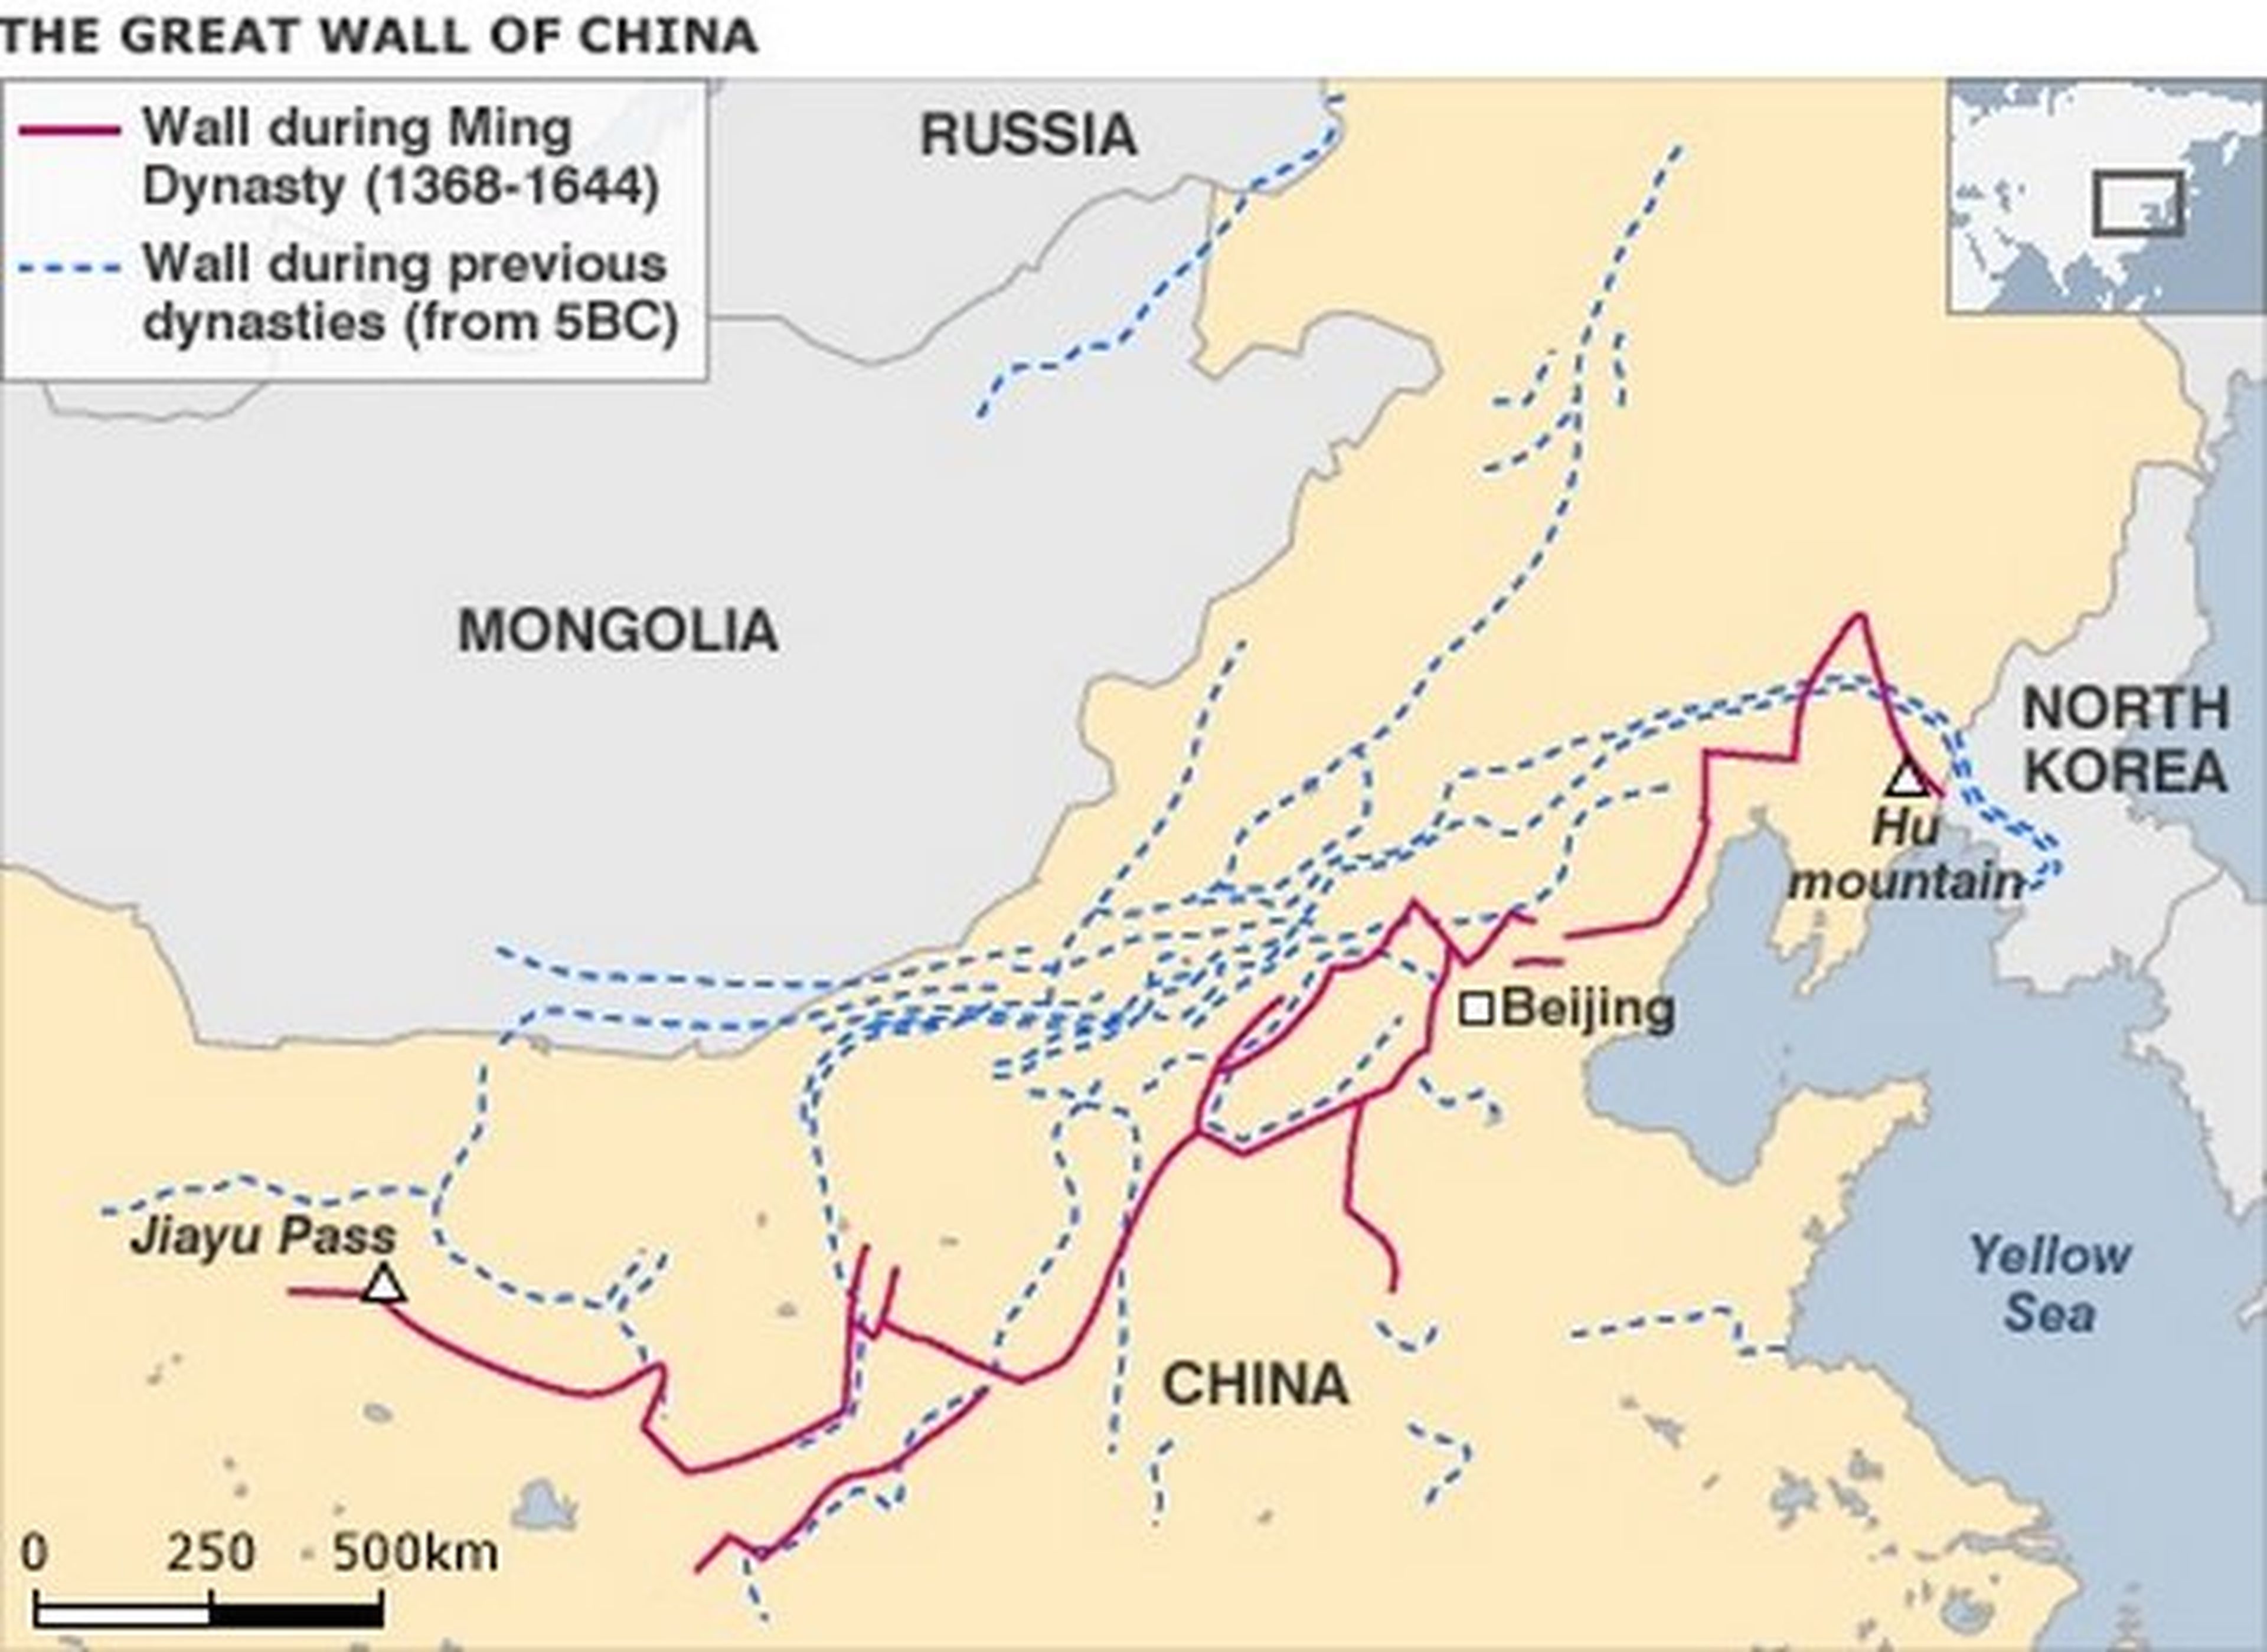 Mitos, leyendas y curiosidades de la Gran Muralla China